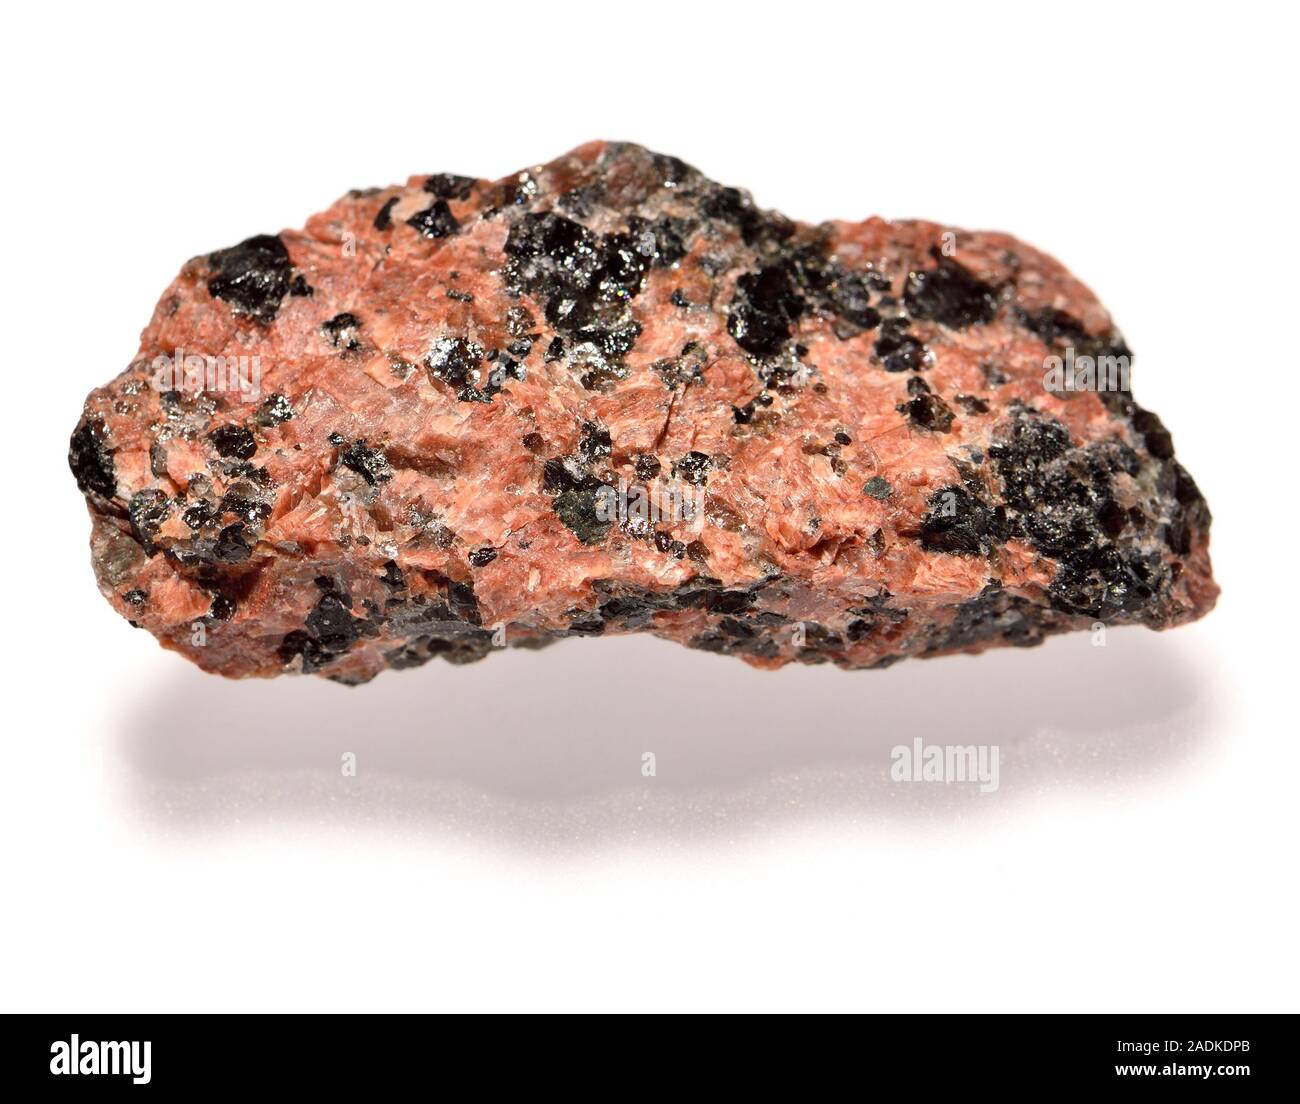 Granodiorit (Norwegen) phaneritic - Strukturierte aufdringlich magmatisches Gestein wie Granit, aber mit mehr Plagioklas als Orthoklas sind miteinander Feldspat Stockfoto